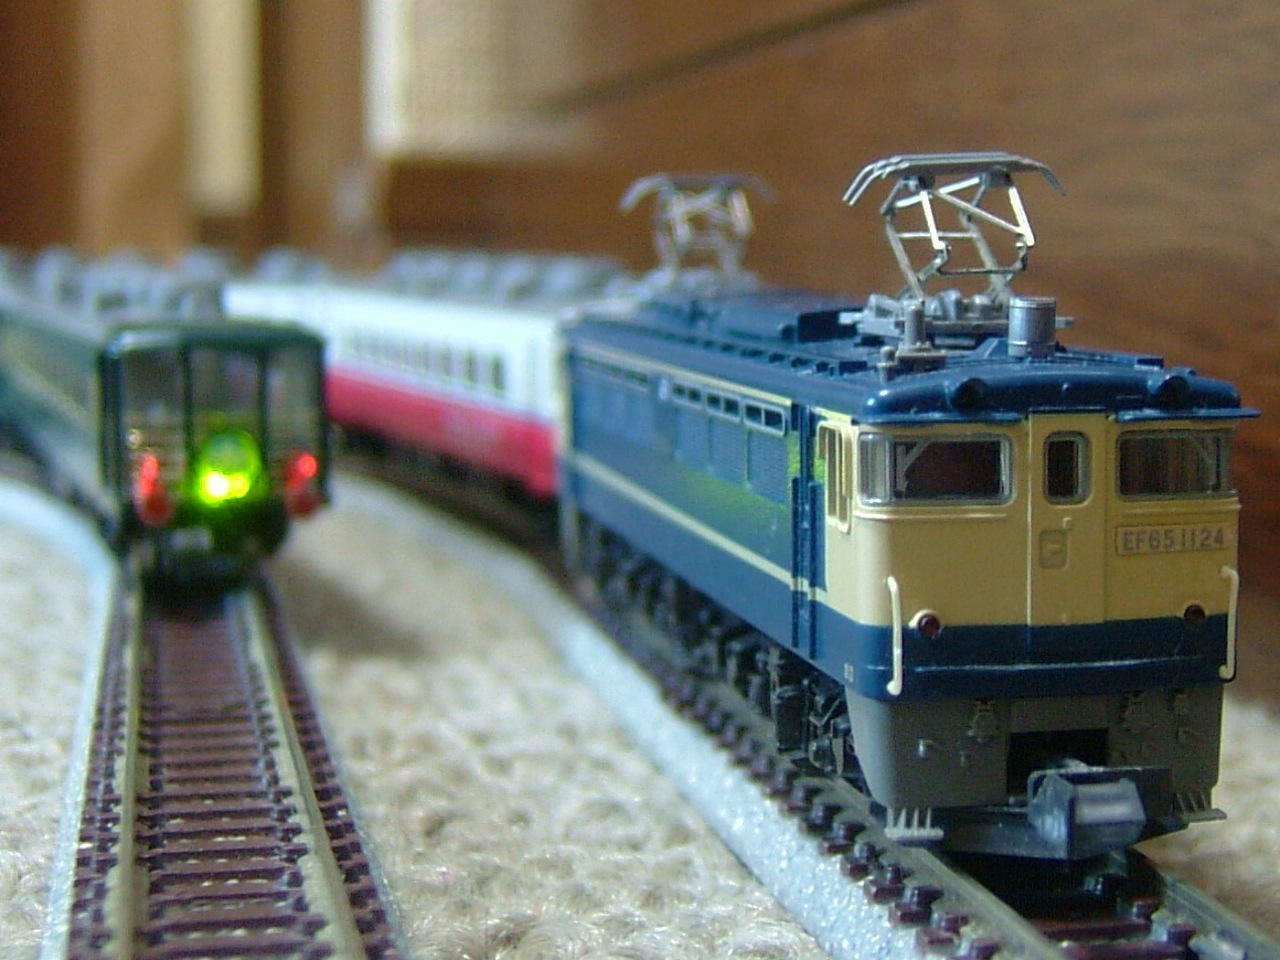 14系JT+リゾート白馬'88と新製品の話題: Mr.Tetsuoの鉄道と芸能界系の